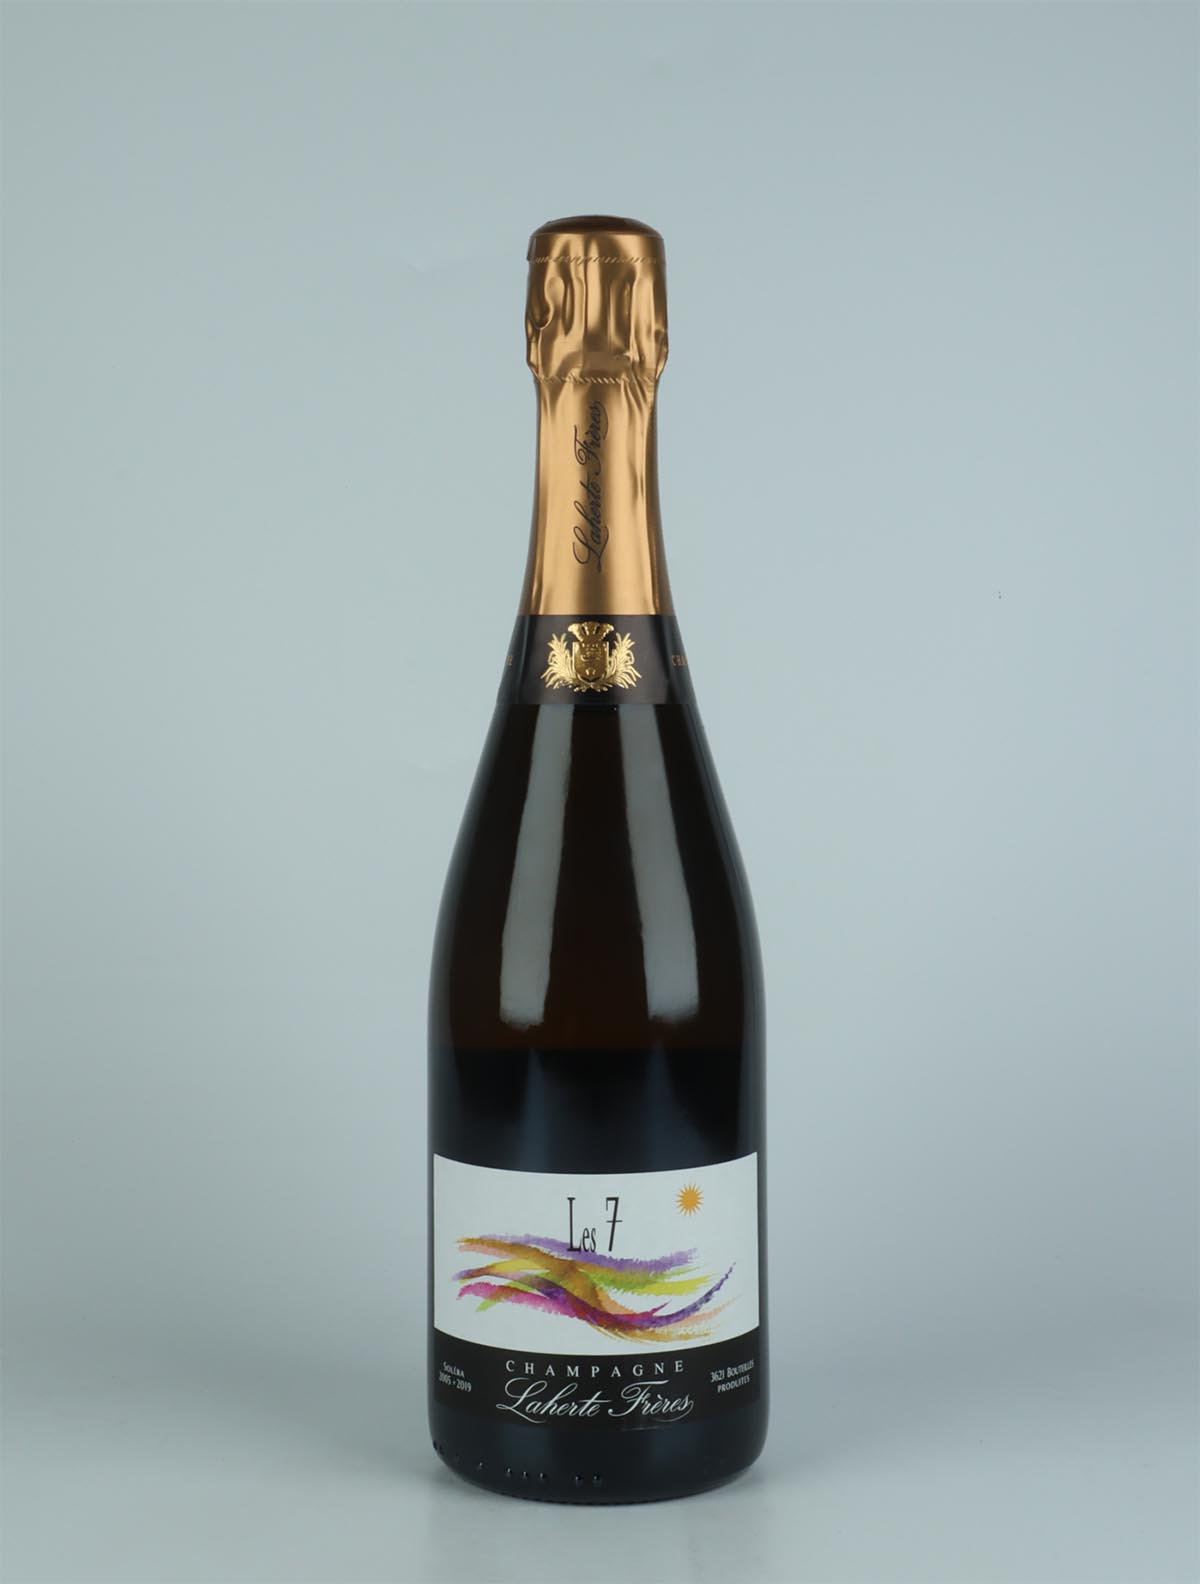 En flaske N.V. Les 7 - Solera Mousserende fra Laherte Frères, Champagne i Frankrig